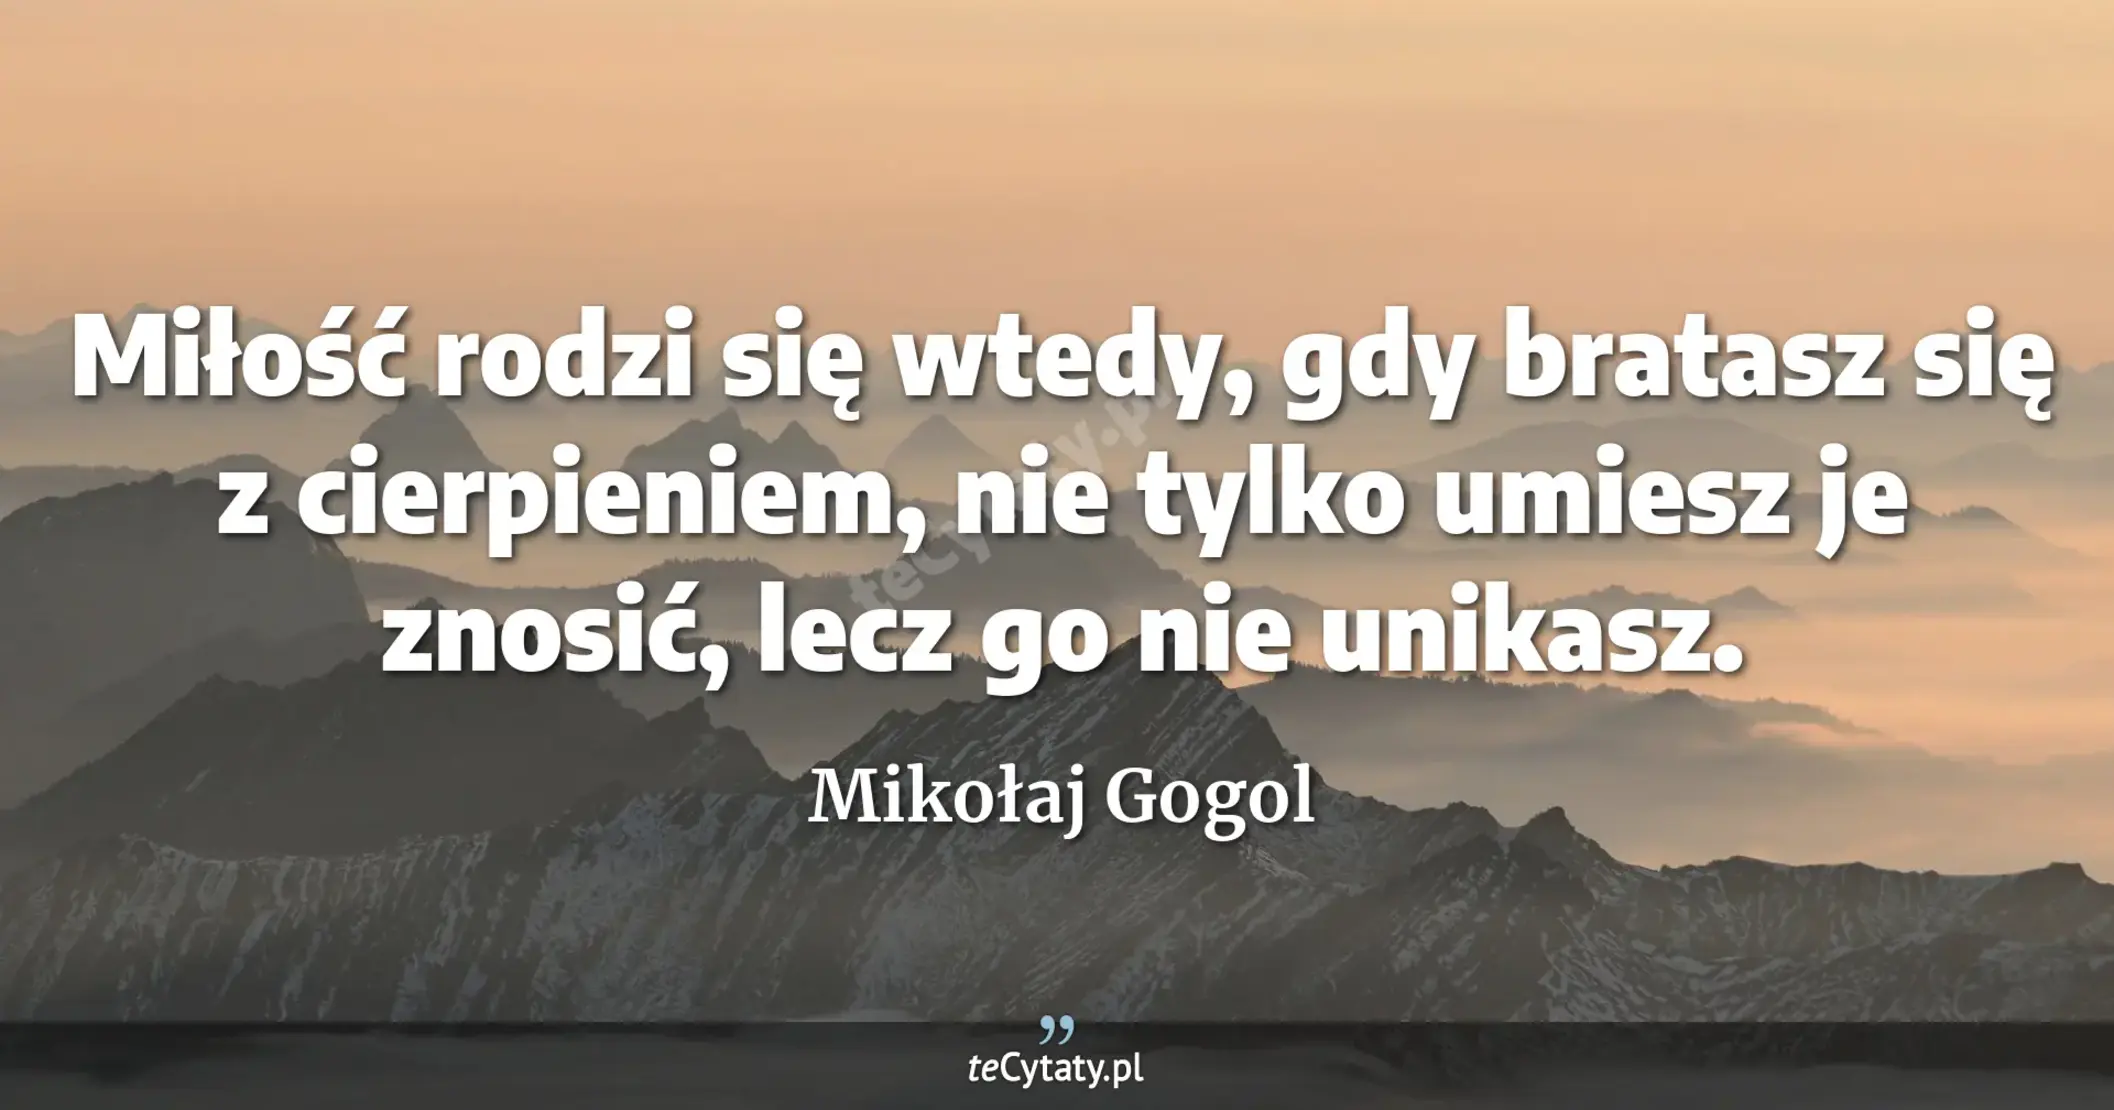 Miłość rodzi się wtedy, gdy bratasz się z cierpieniem, nie tylko umiesz je znosić, lecz go nie unikasz. - Mikołaj Gogol